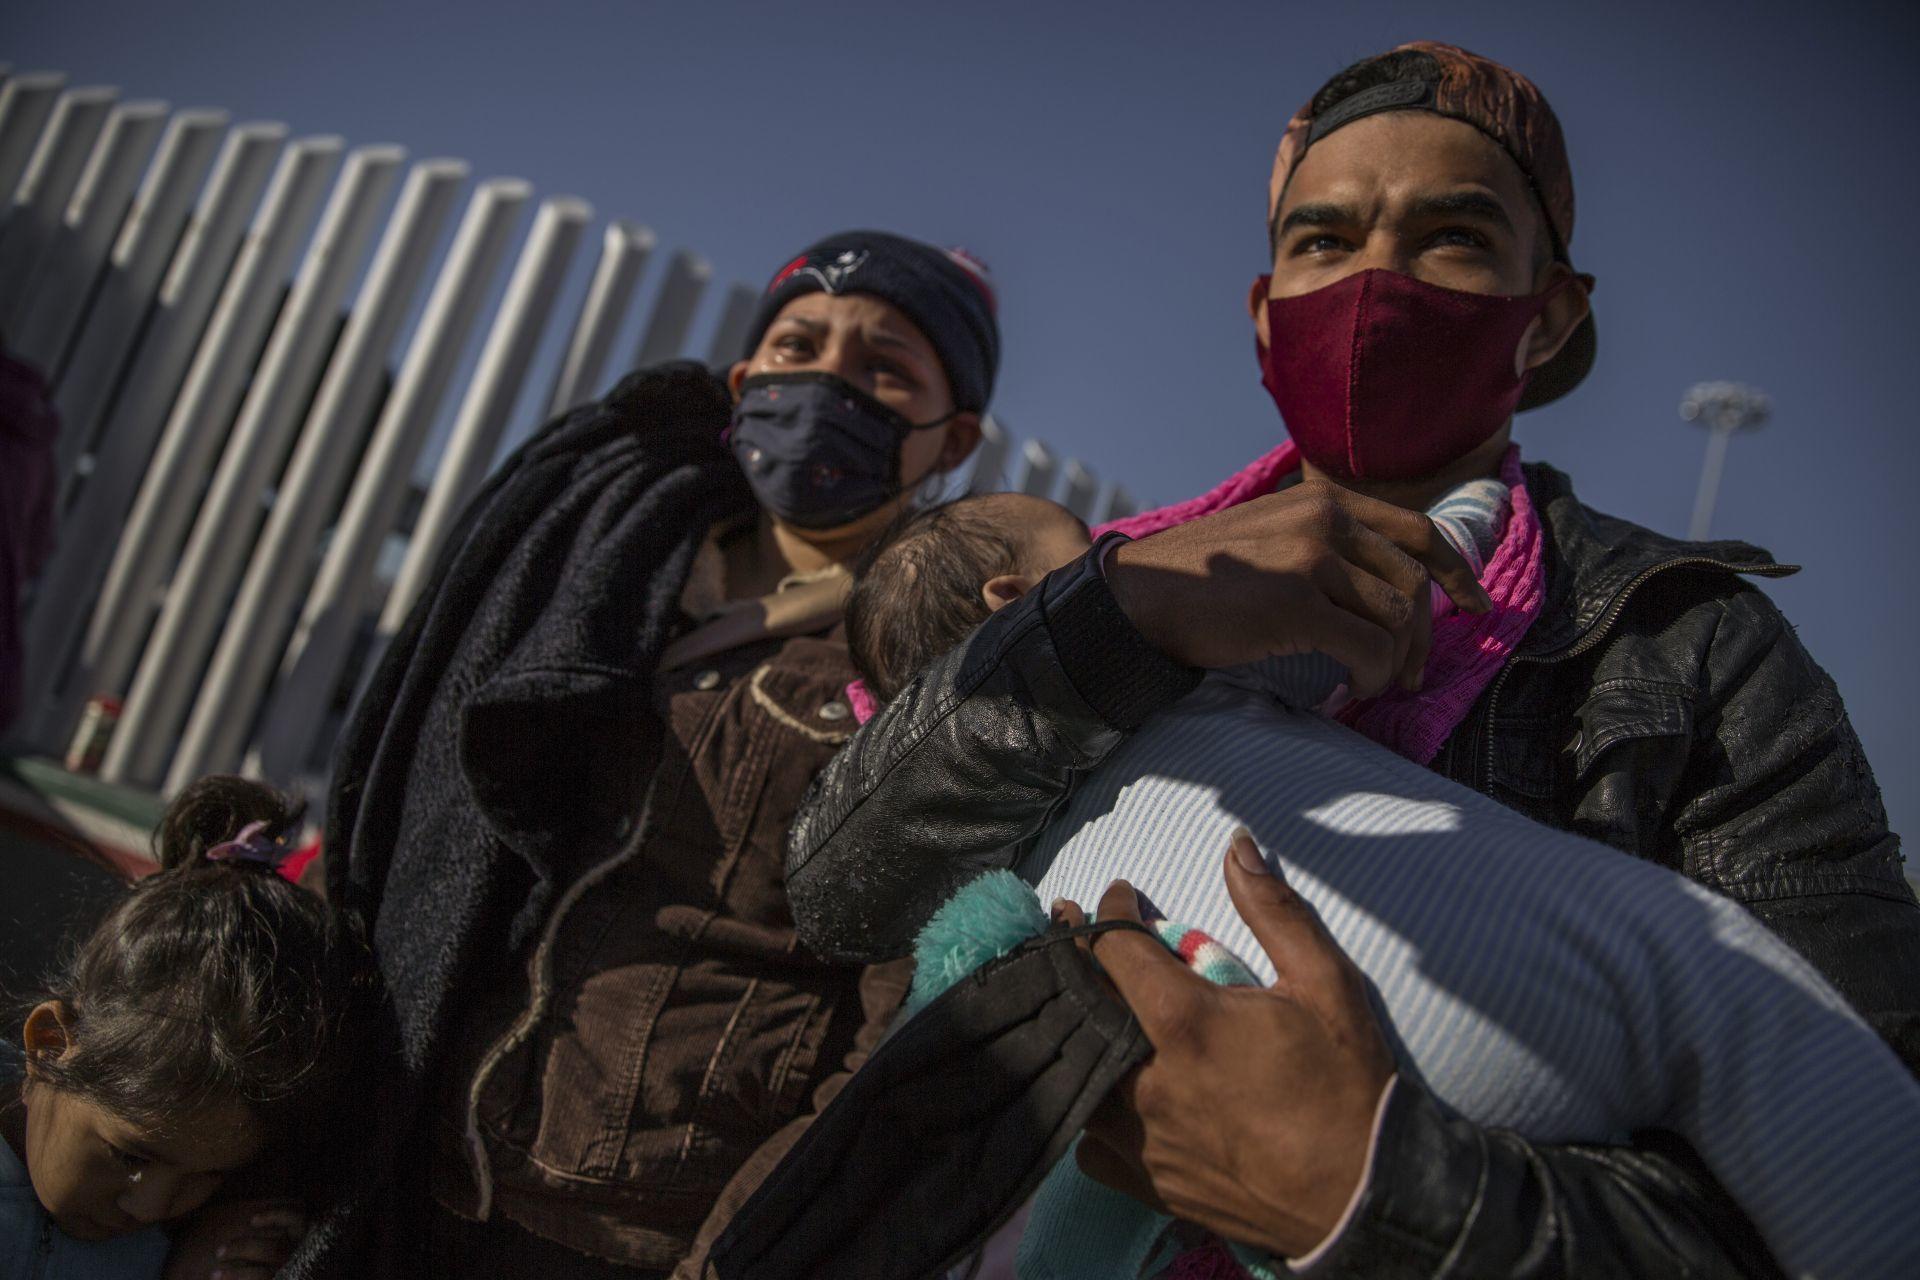 Migrantes solicitantes de asilo en EU son abandonados en México y sufren violaciones de sus derechos